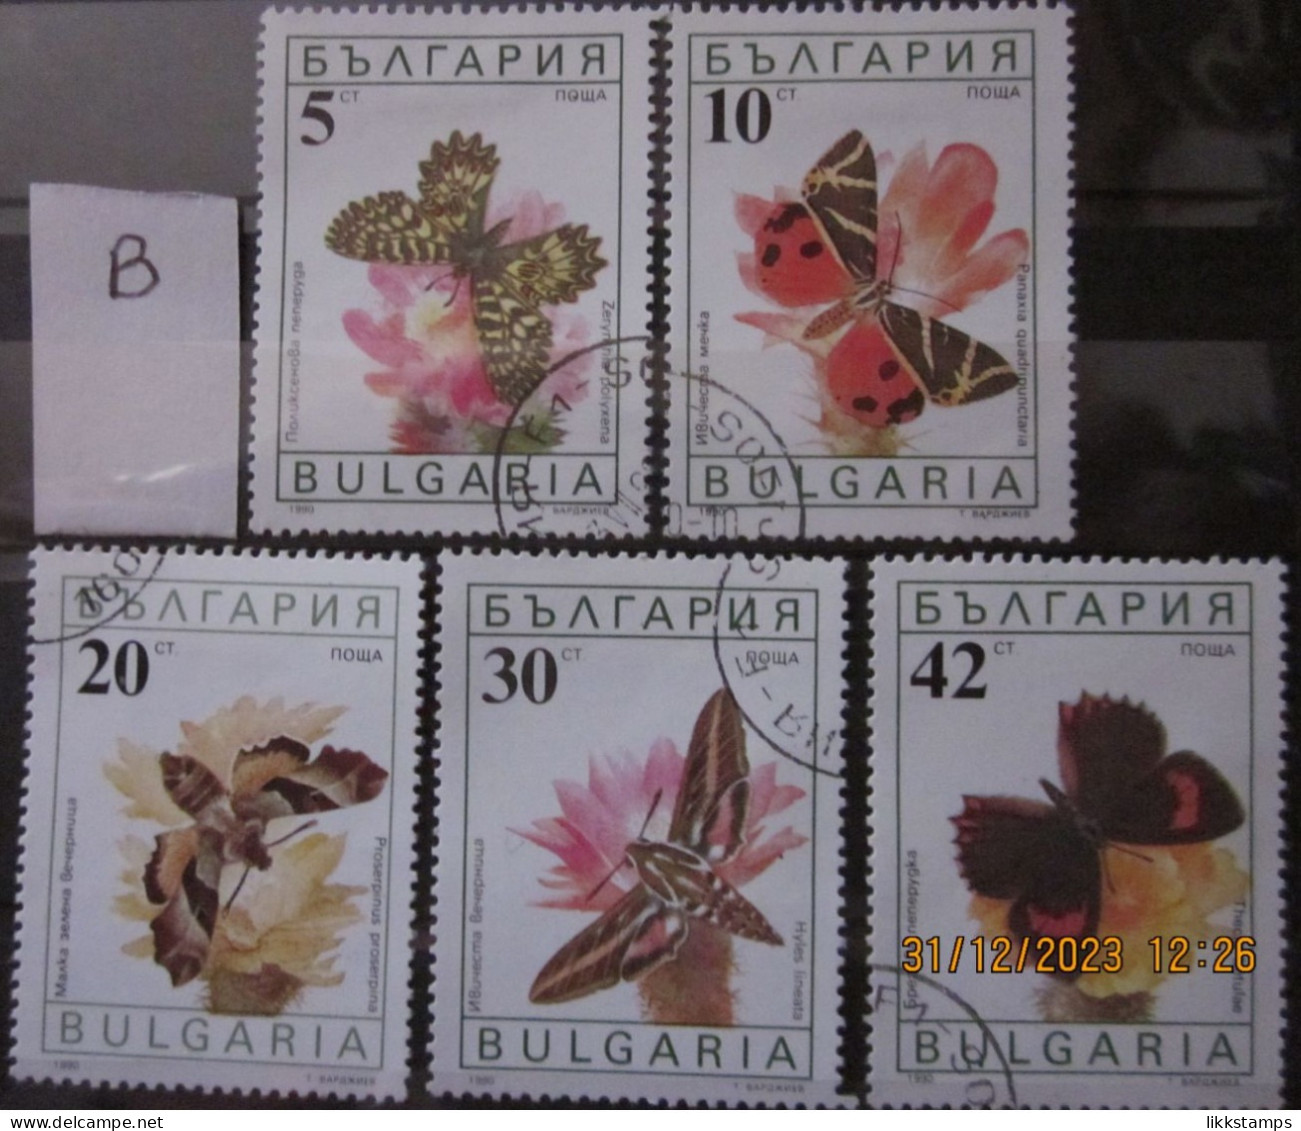 BULGARIA 1990 ~ S.G. 3699 - 3703, ~ 'LOT B' ~ BUTTERFLIES AND MOTHS. ~  VFU #02917 - Oblitérés